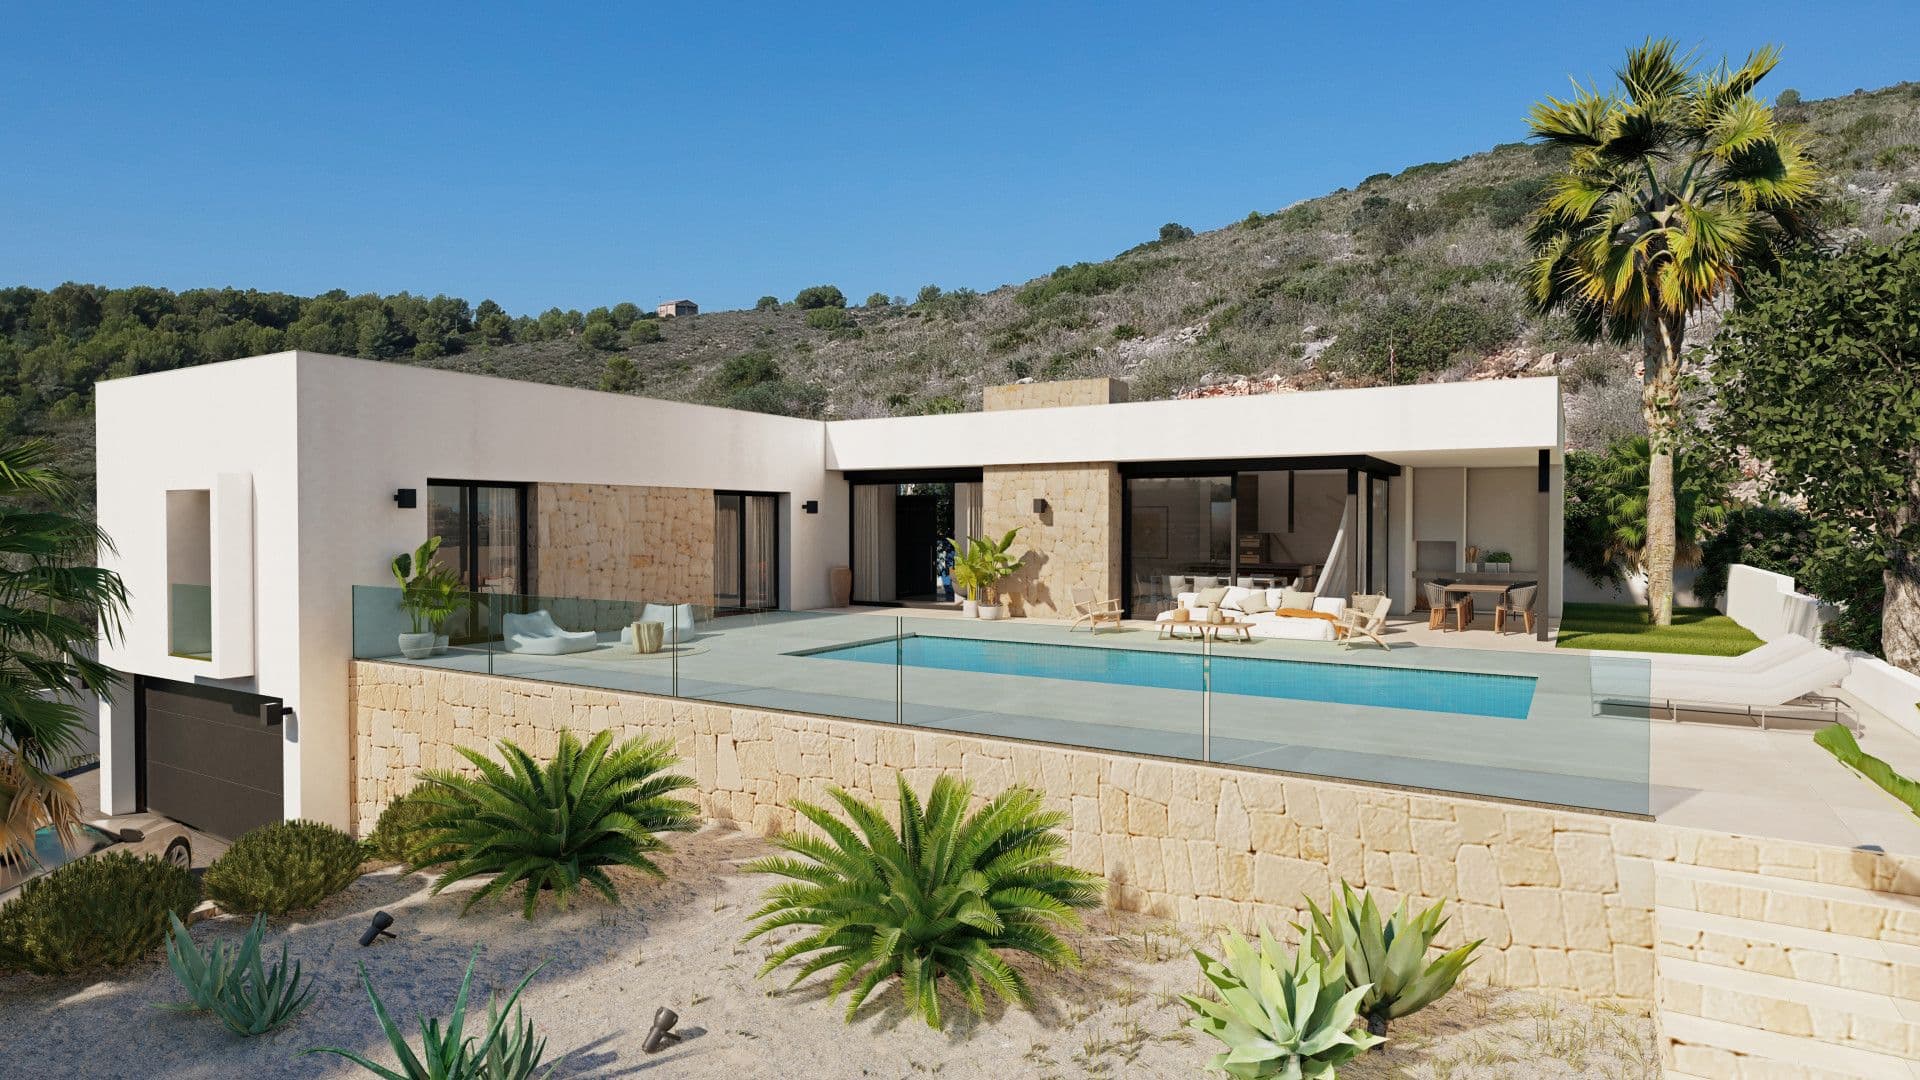 Villa en construcción de estilo ibicenco/mediterráneo en la Urbanización Racó de Nadal en Benitachell, Alicante